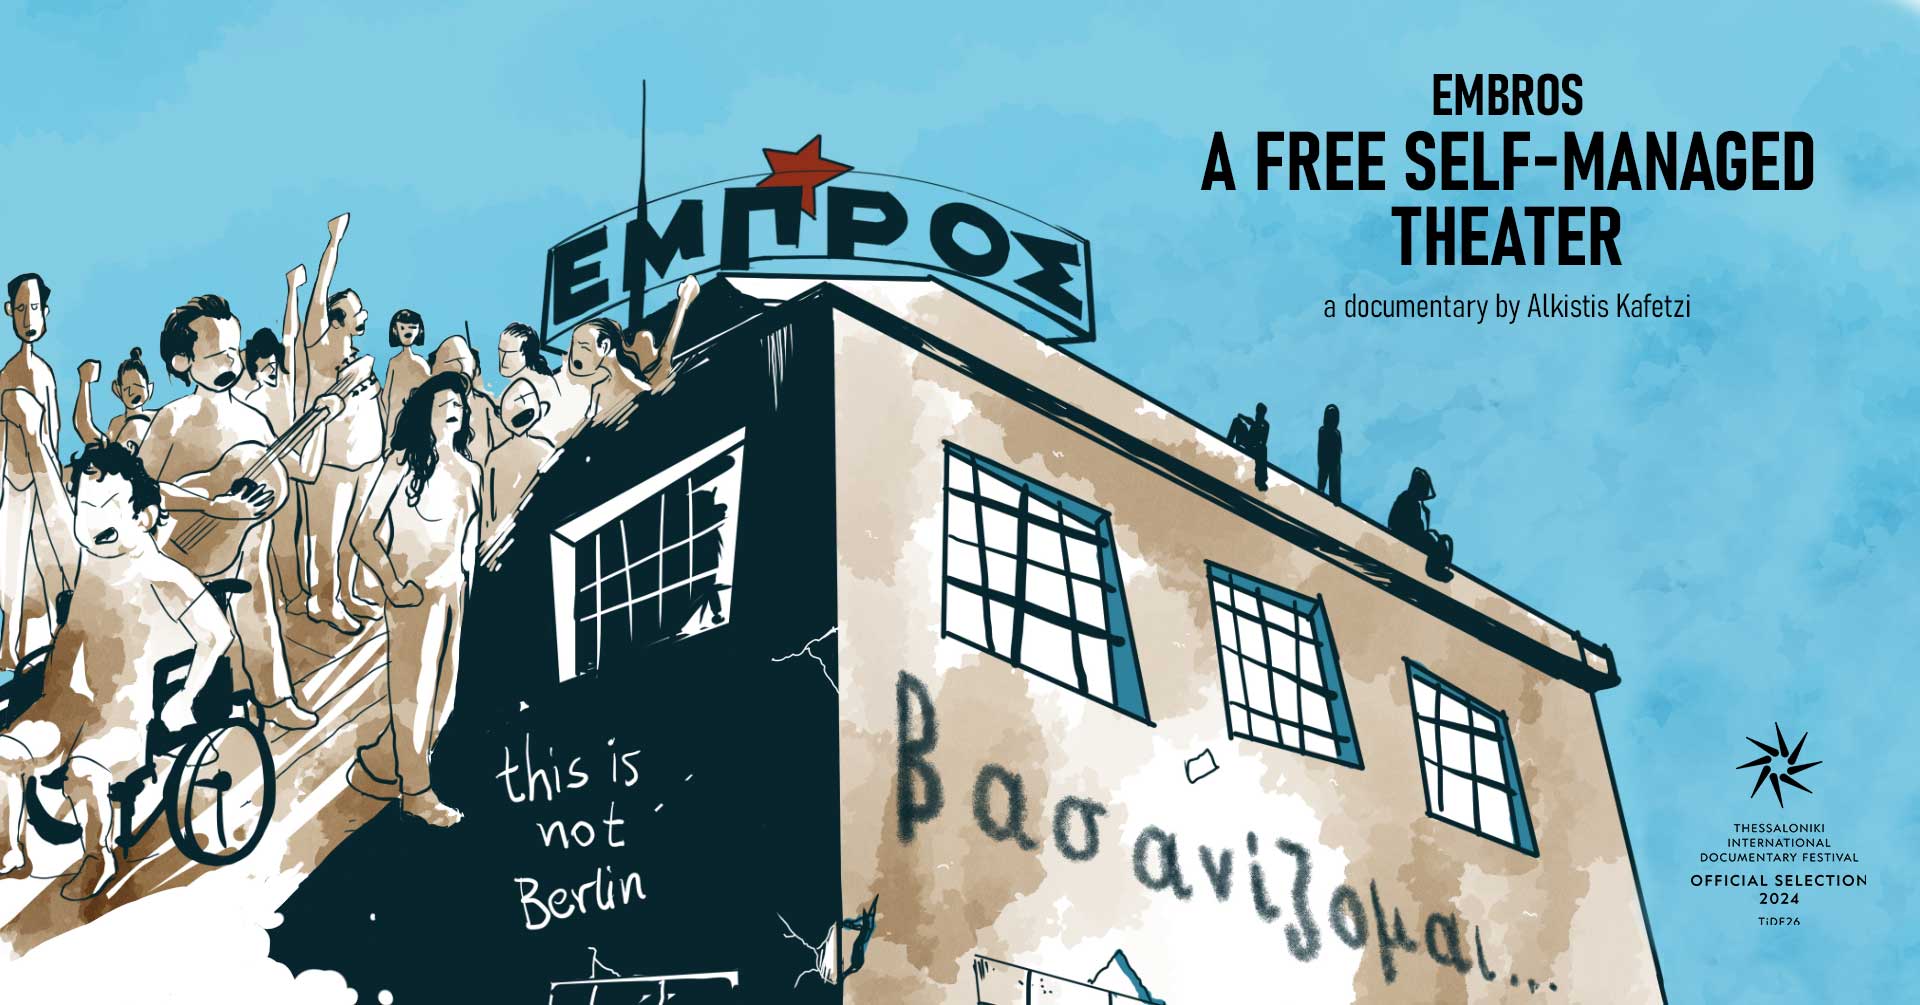 Αθηναϊκή πρεμιέρα για το ντοκιμαντέρ “ΕΜΠΡΟΣ: ένα ελεύθερο αυτοδιαχειριζόμενο θέατρο”